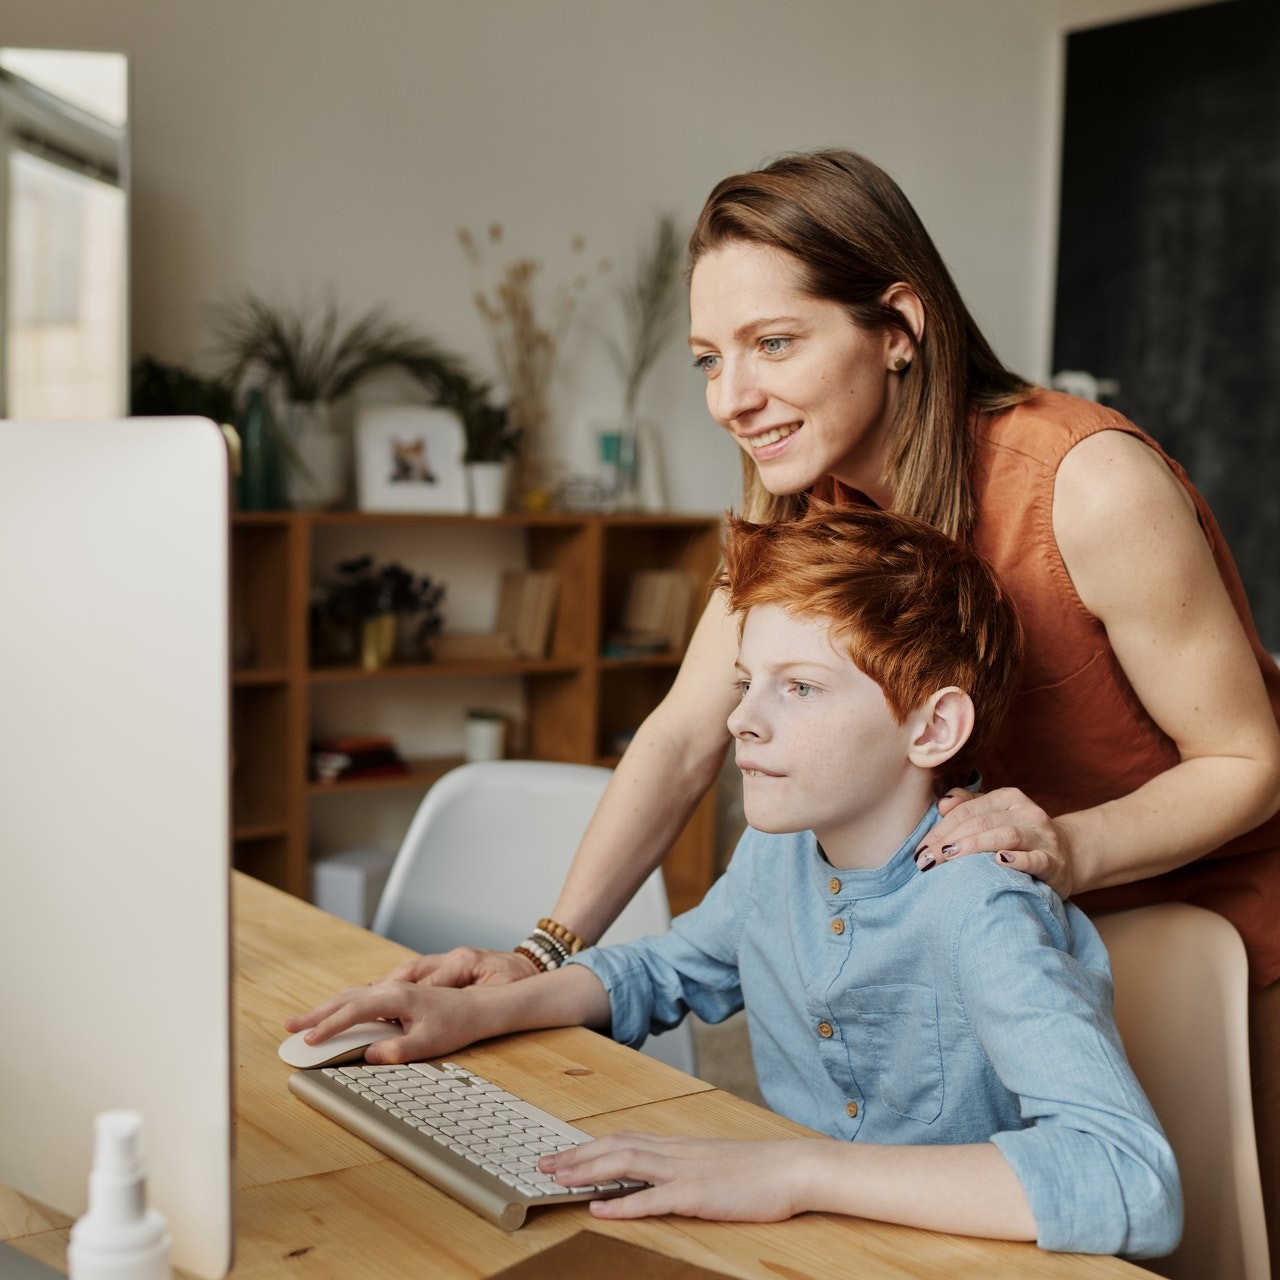 Chłopiec patrzy ze skupieniem w ekran monitora. Za nim stoi kobieta (mama) trzymając jedną dłoń na myszce komputerowej a drugą na ramieniu chłopca.